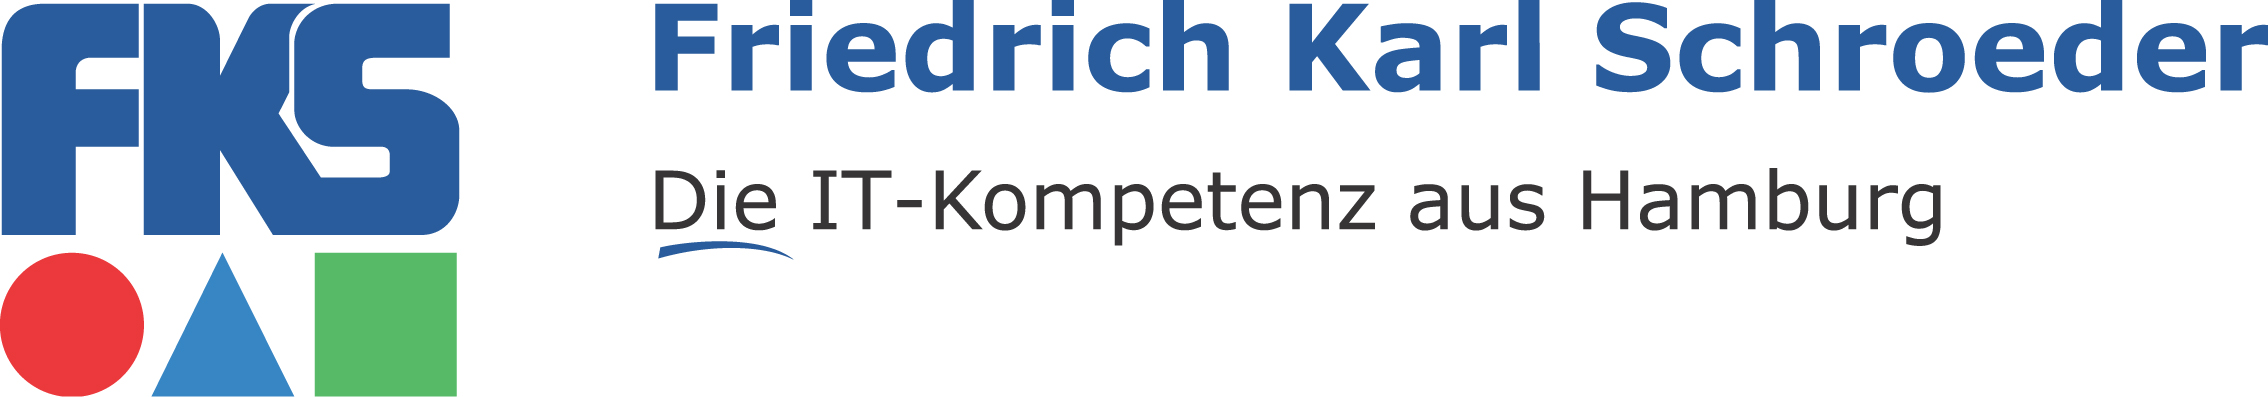 Friedrich Karl Schroeder GmbH & Co. KG